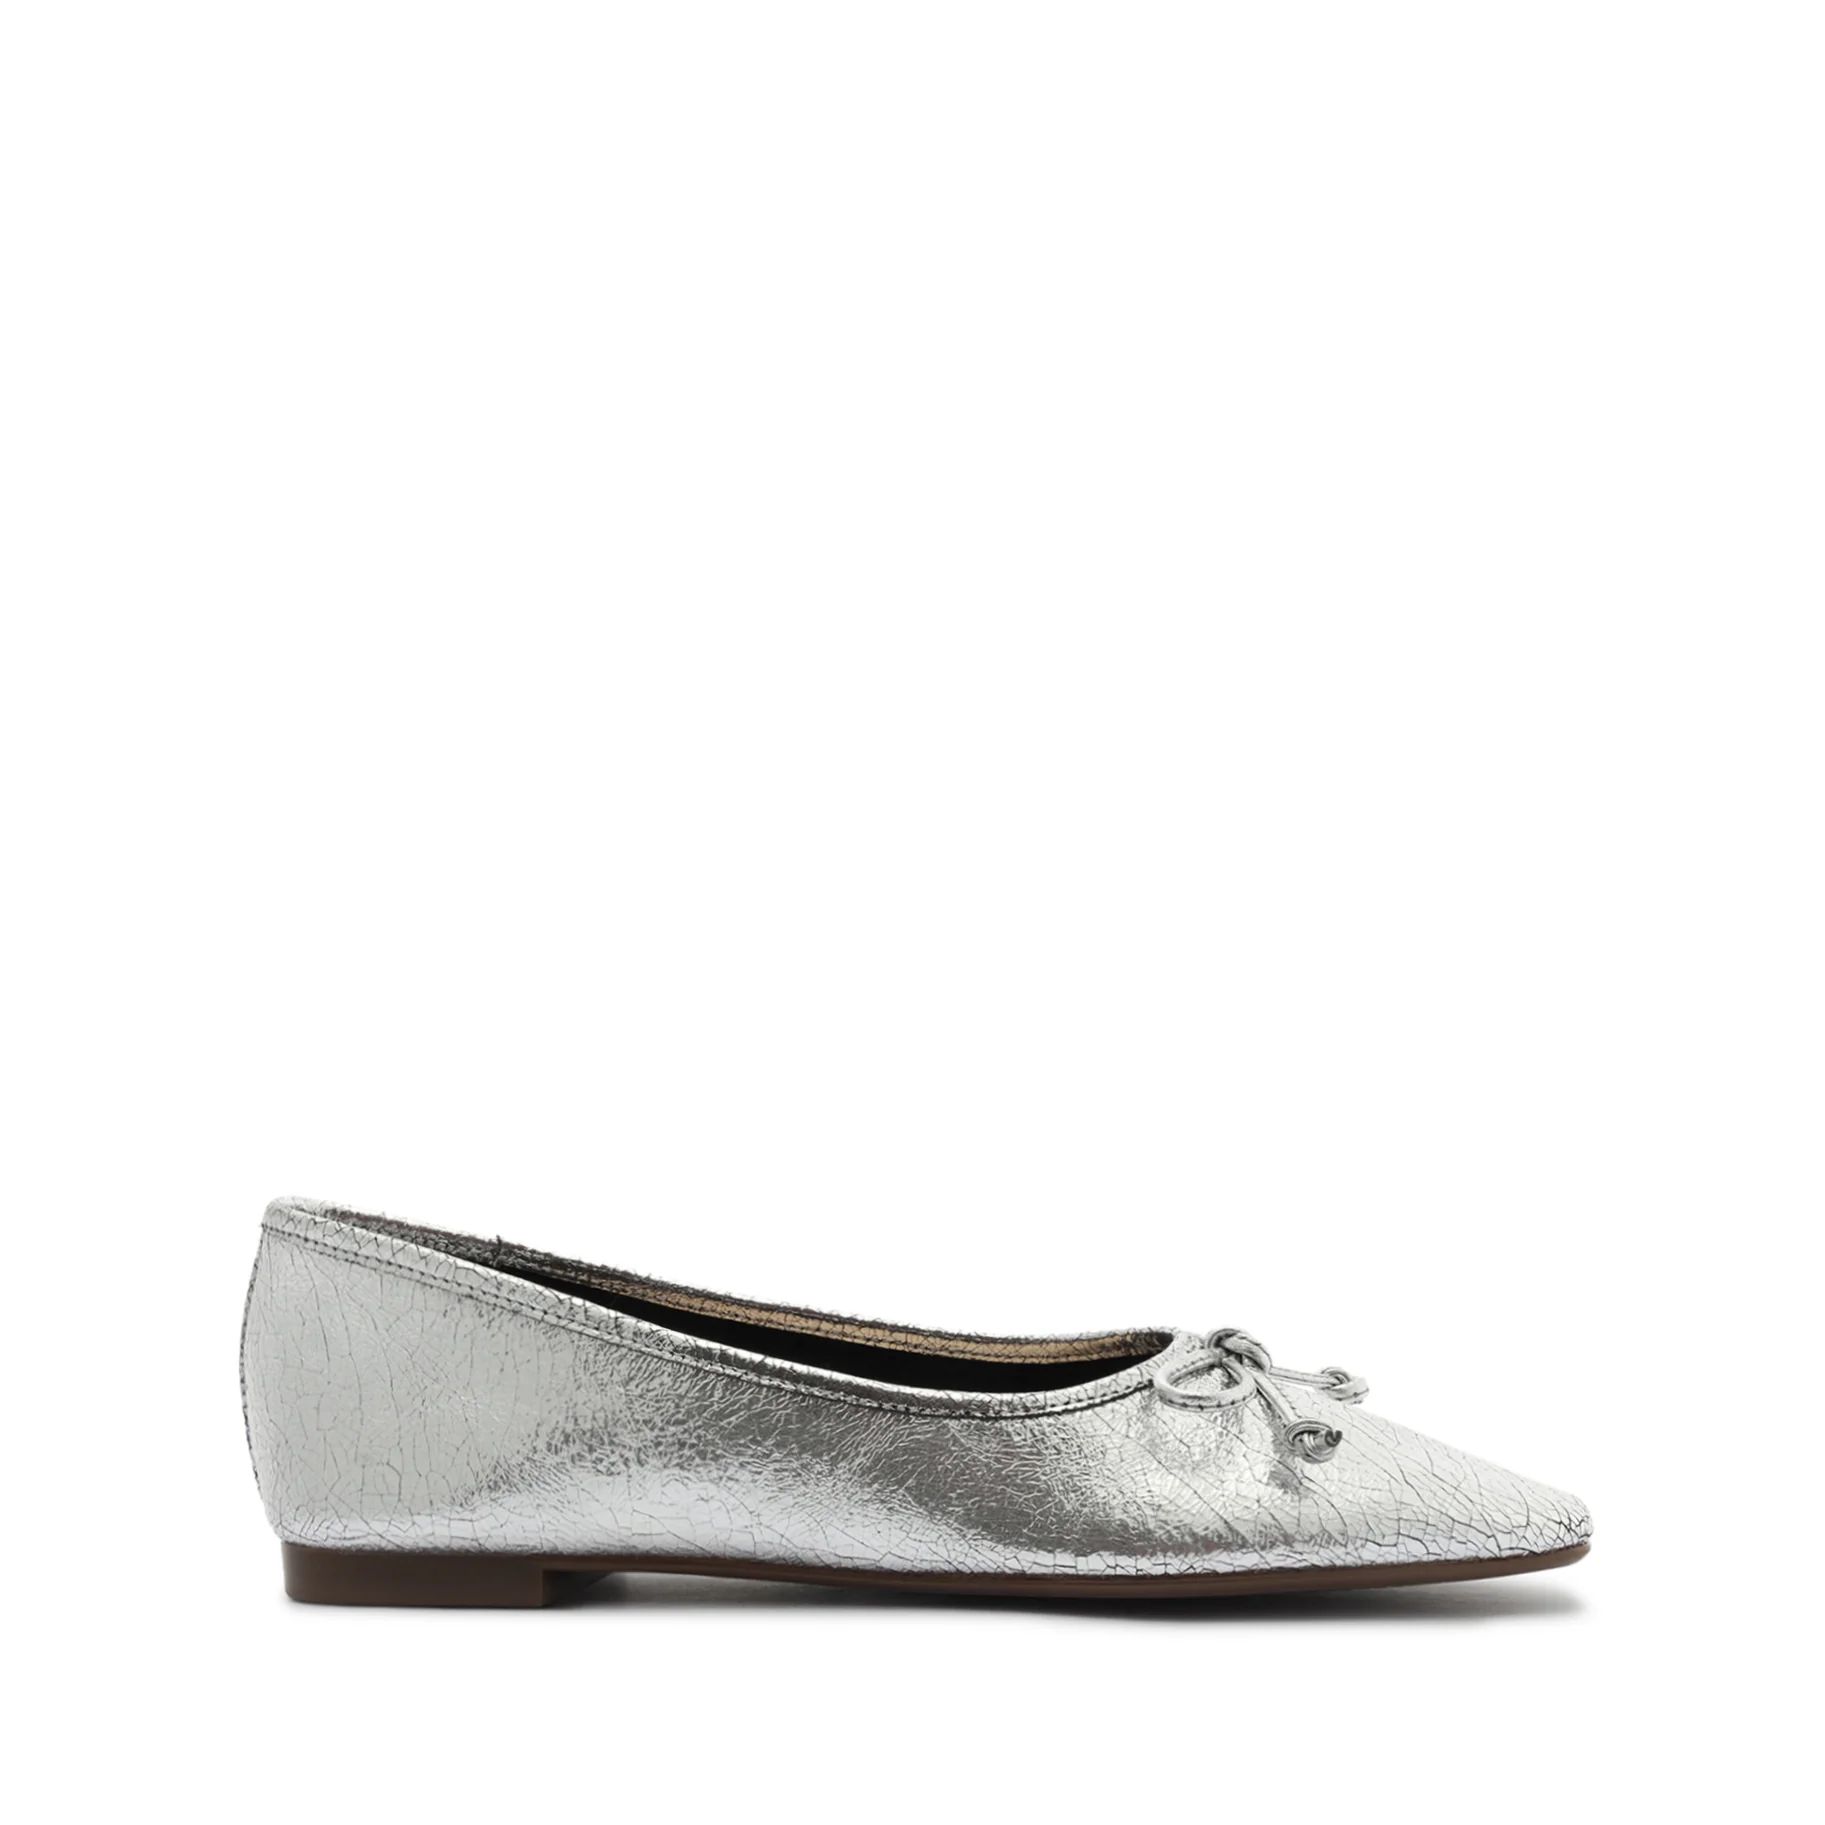 Arissa Ballet Flat with Bow Tie Detail in Metallic | Schutz Shoes | Schutz Shoes (US)